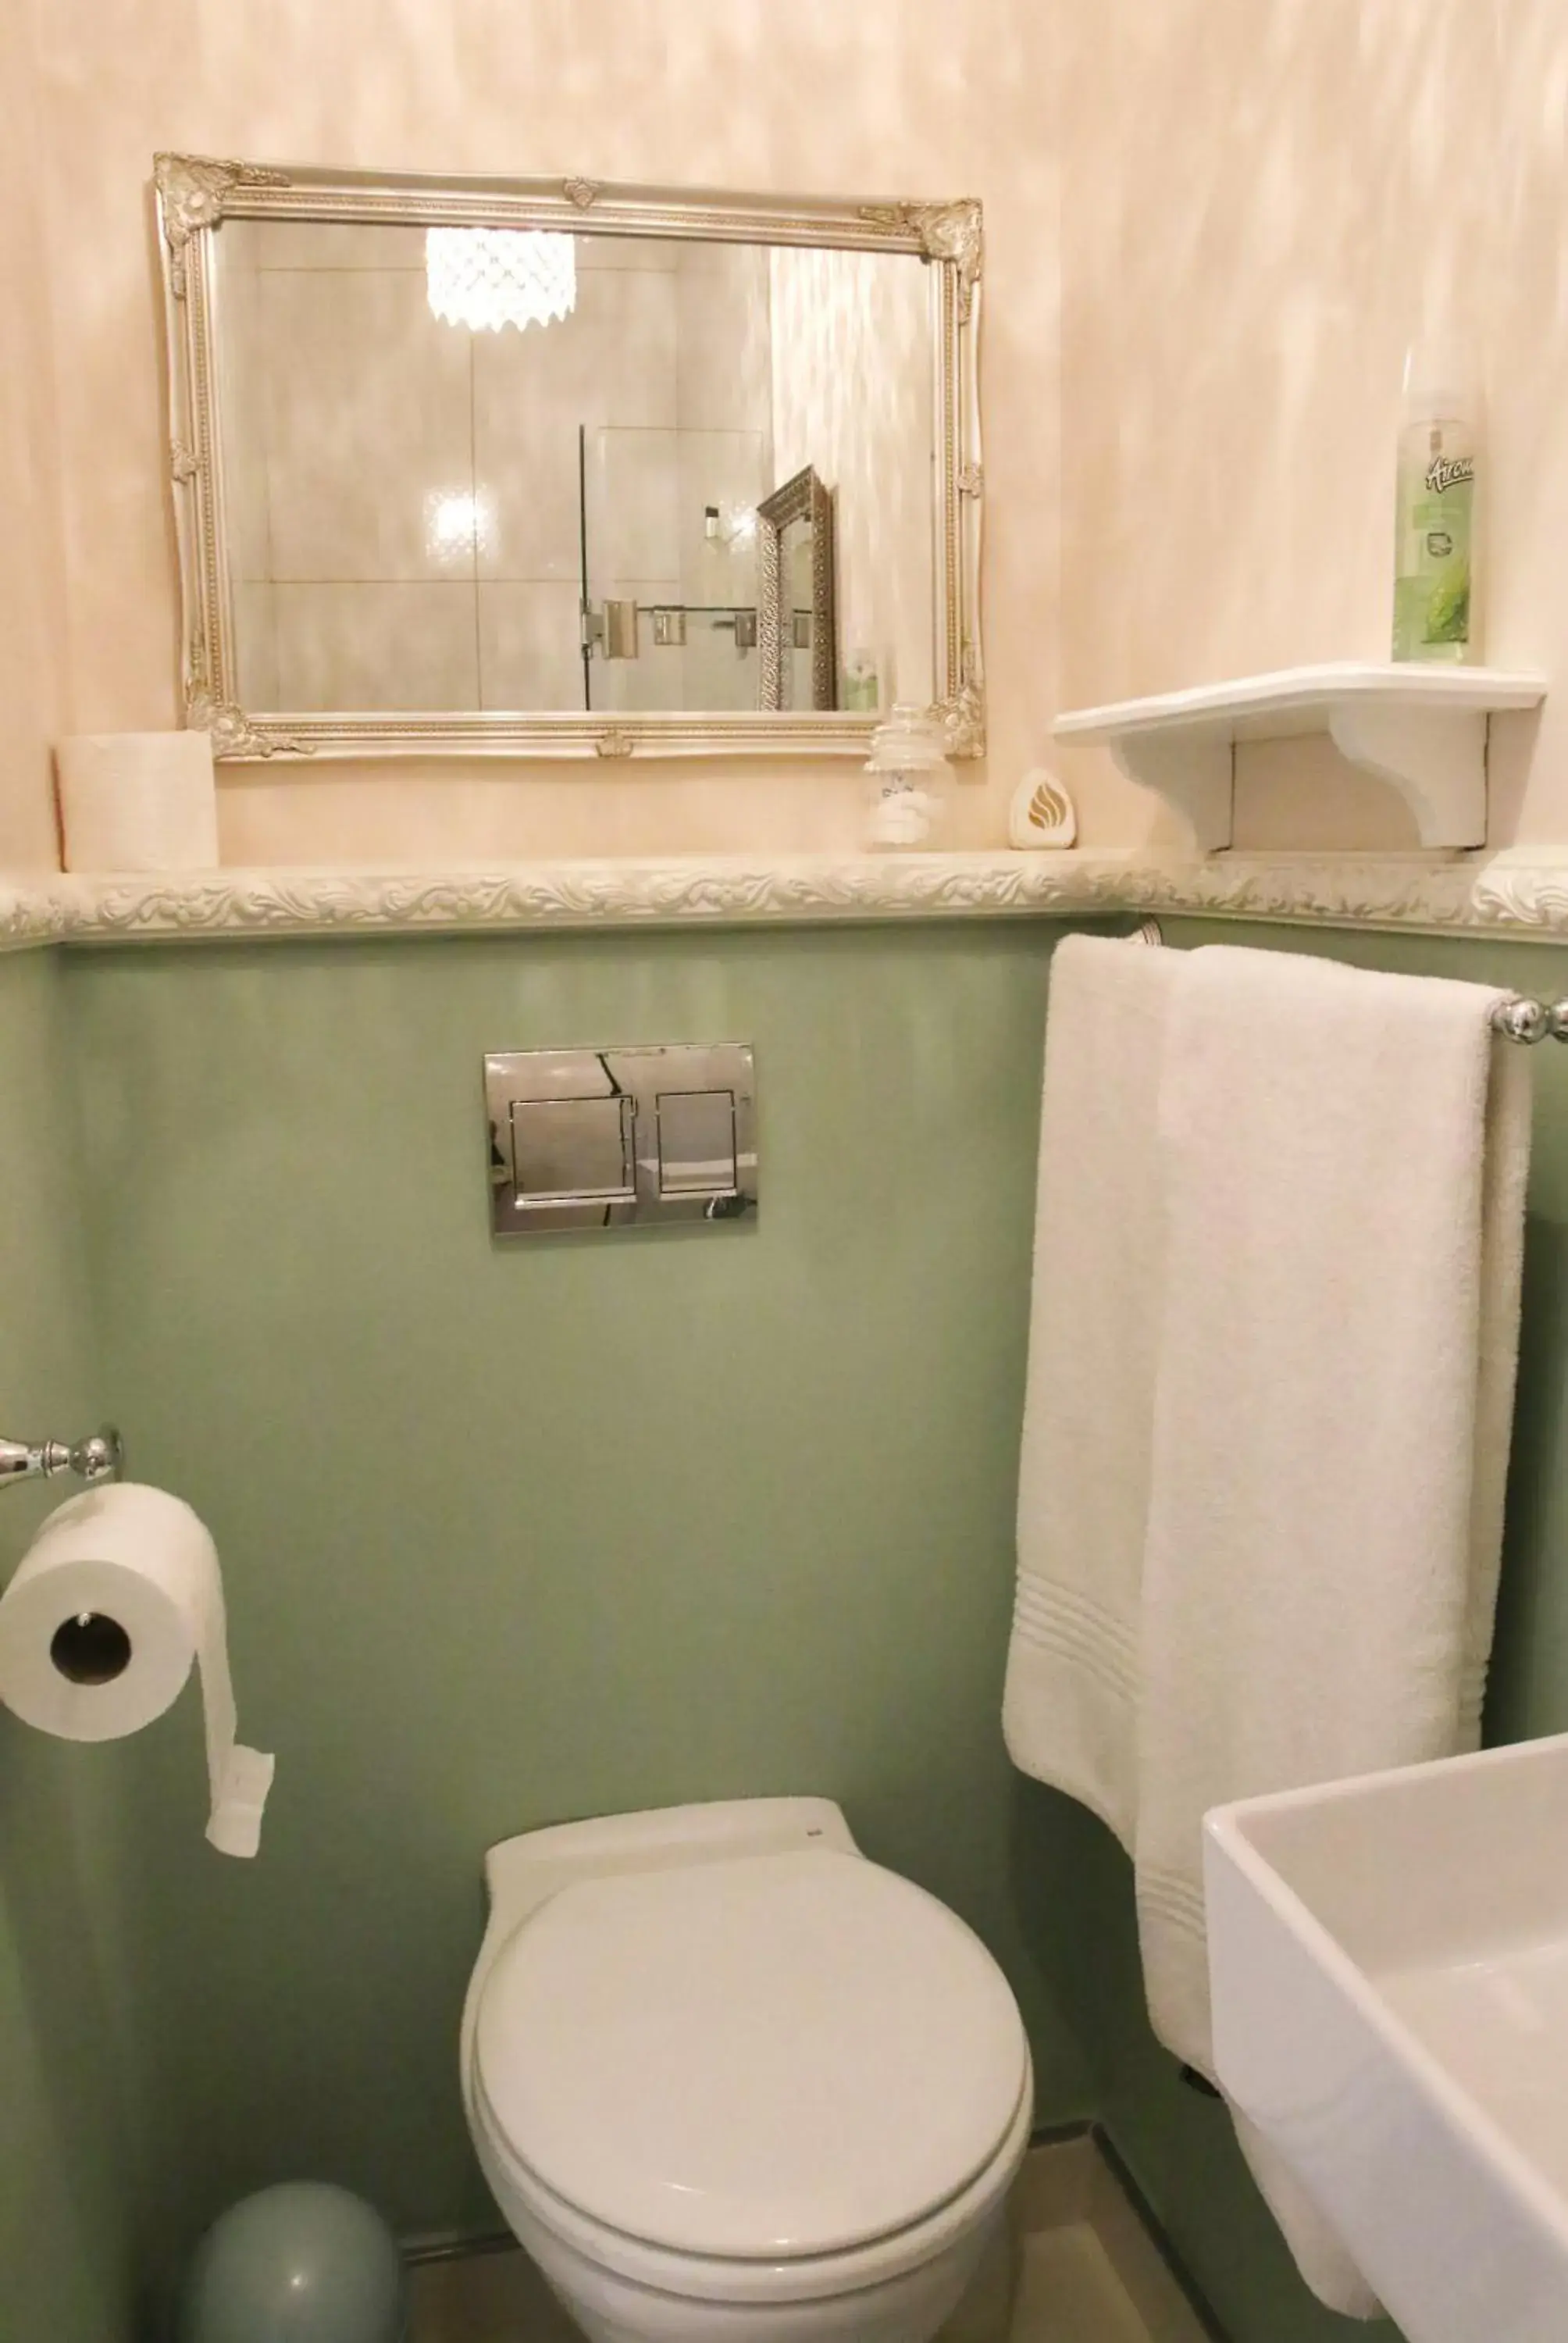 Toilet, Bathroom in Dolphin Inn Guesthouse